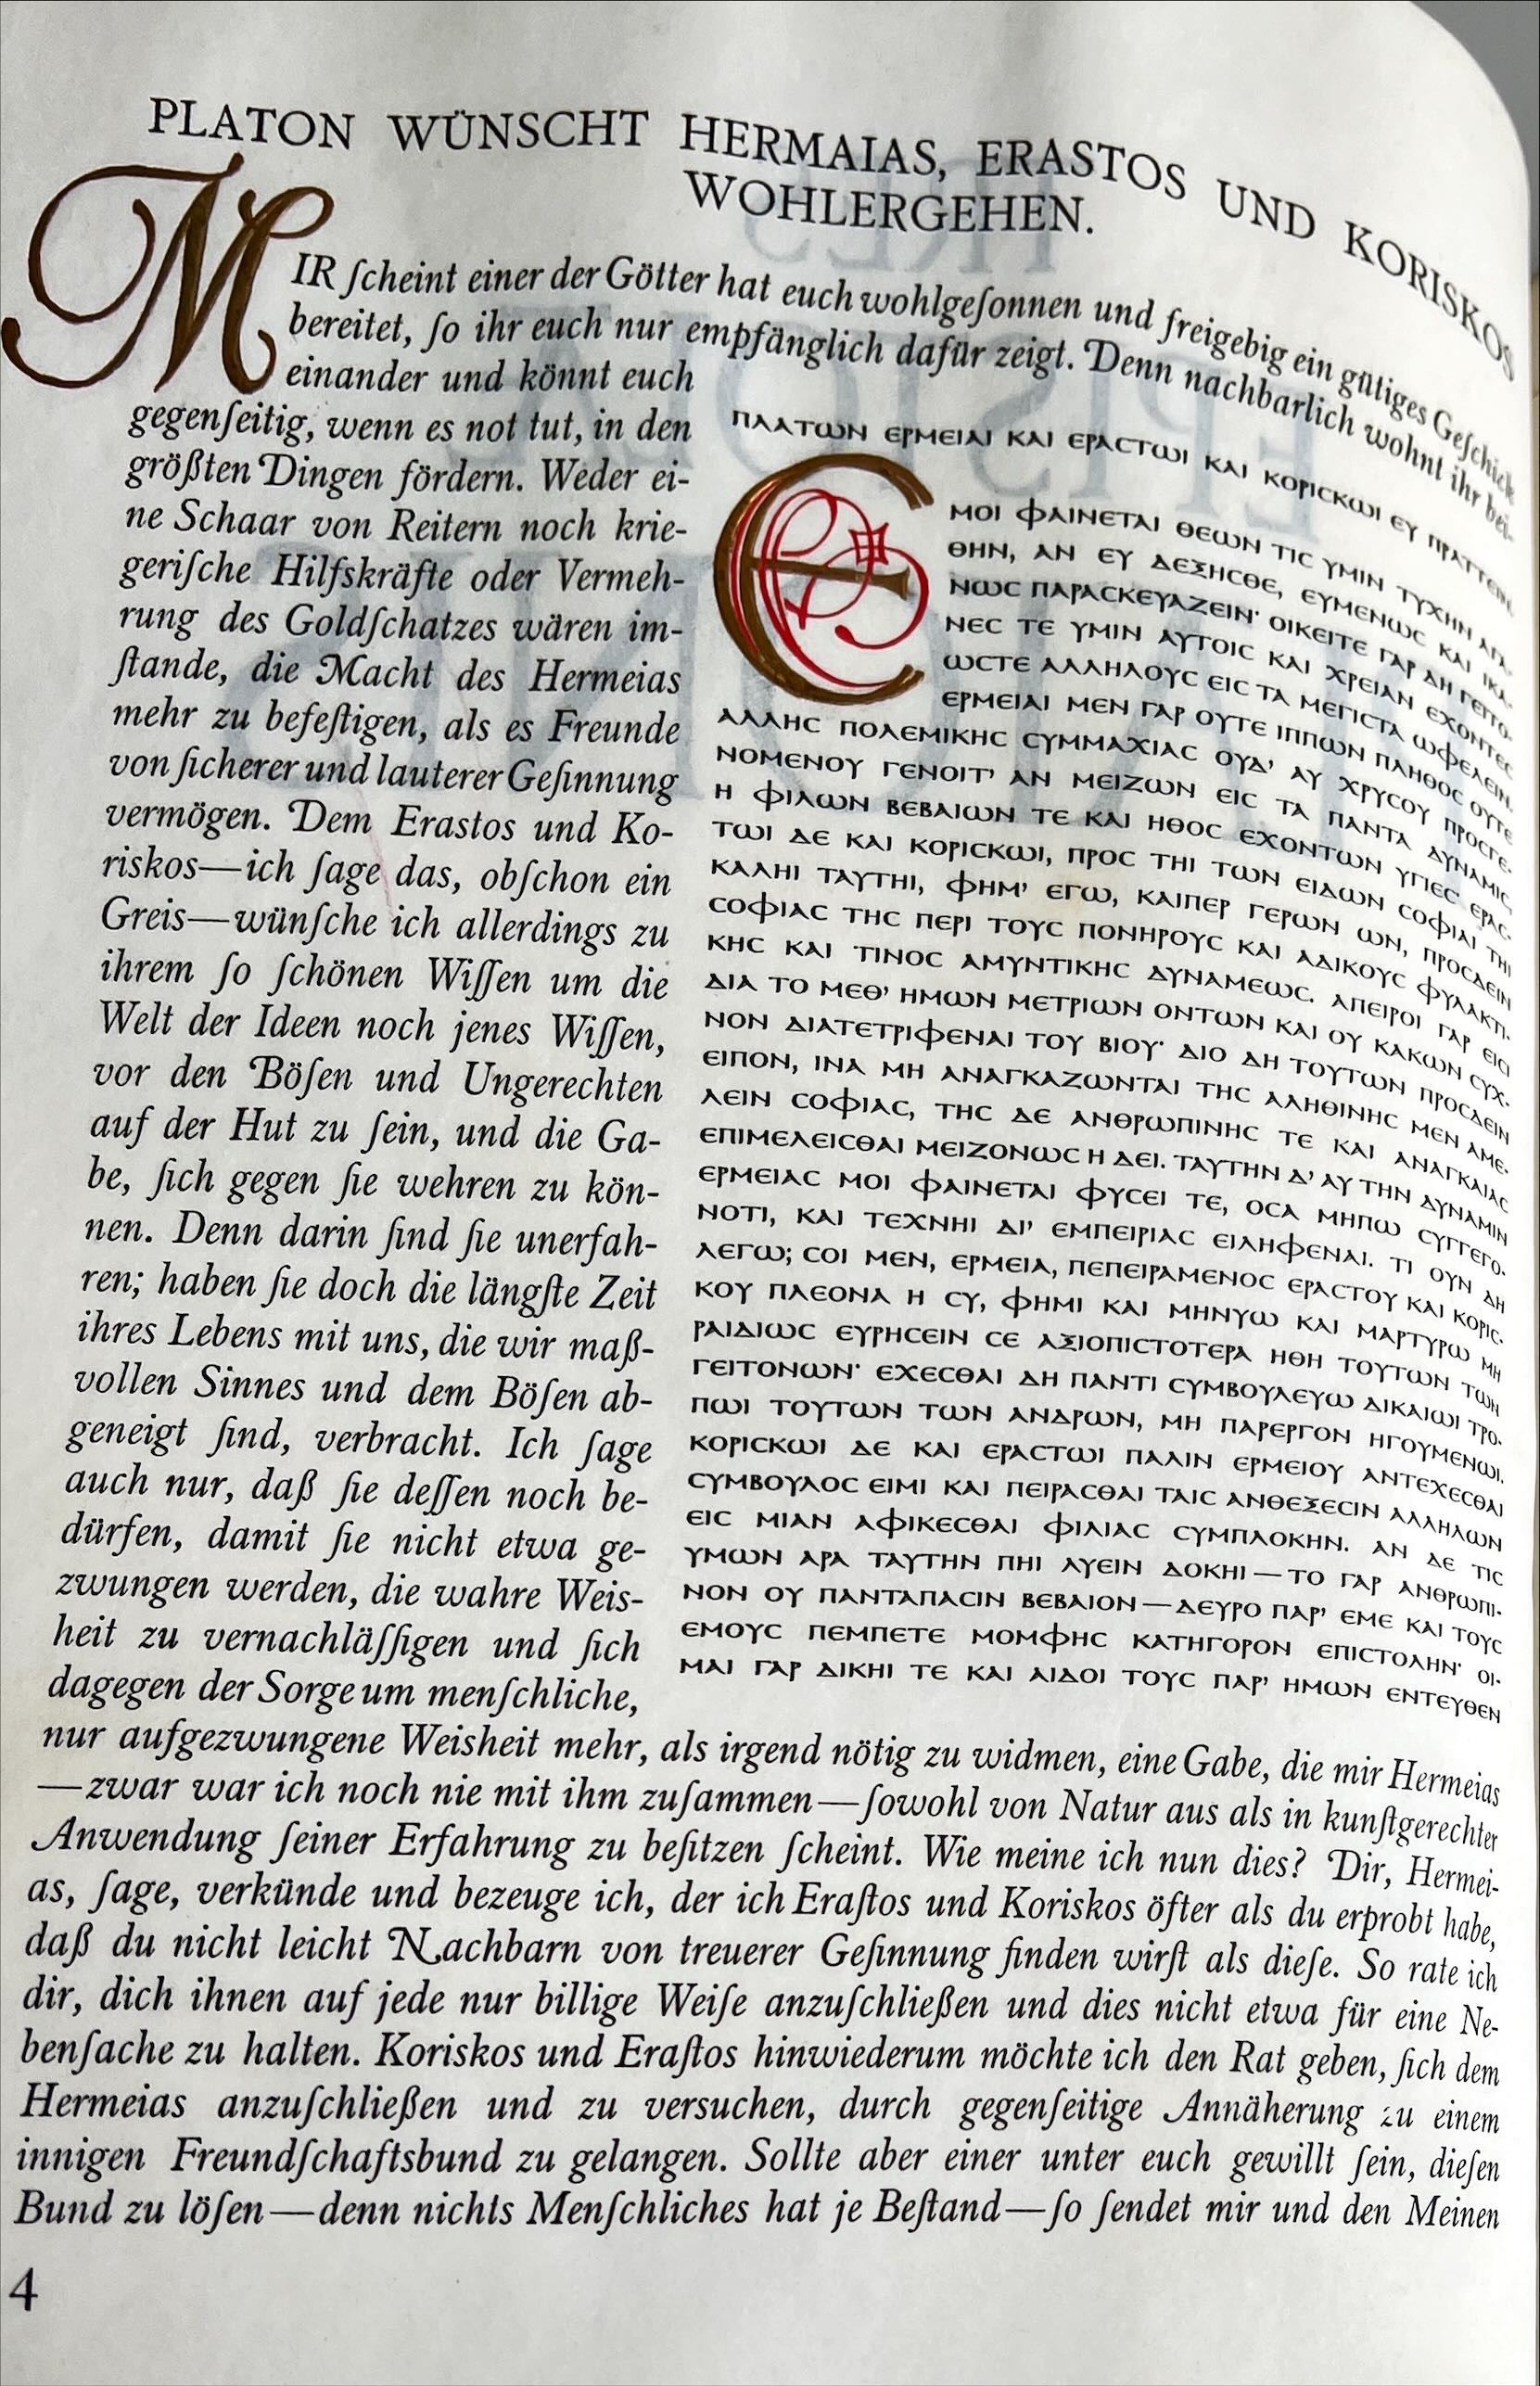 Tres Epistolae Platonis, Schuber, auf Pergament gedruckt